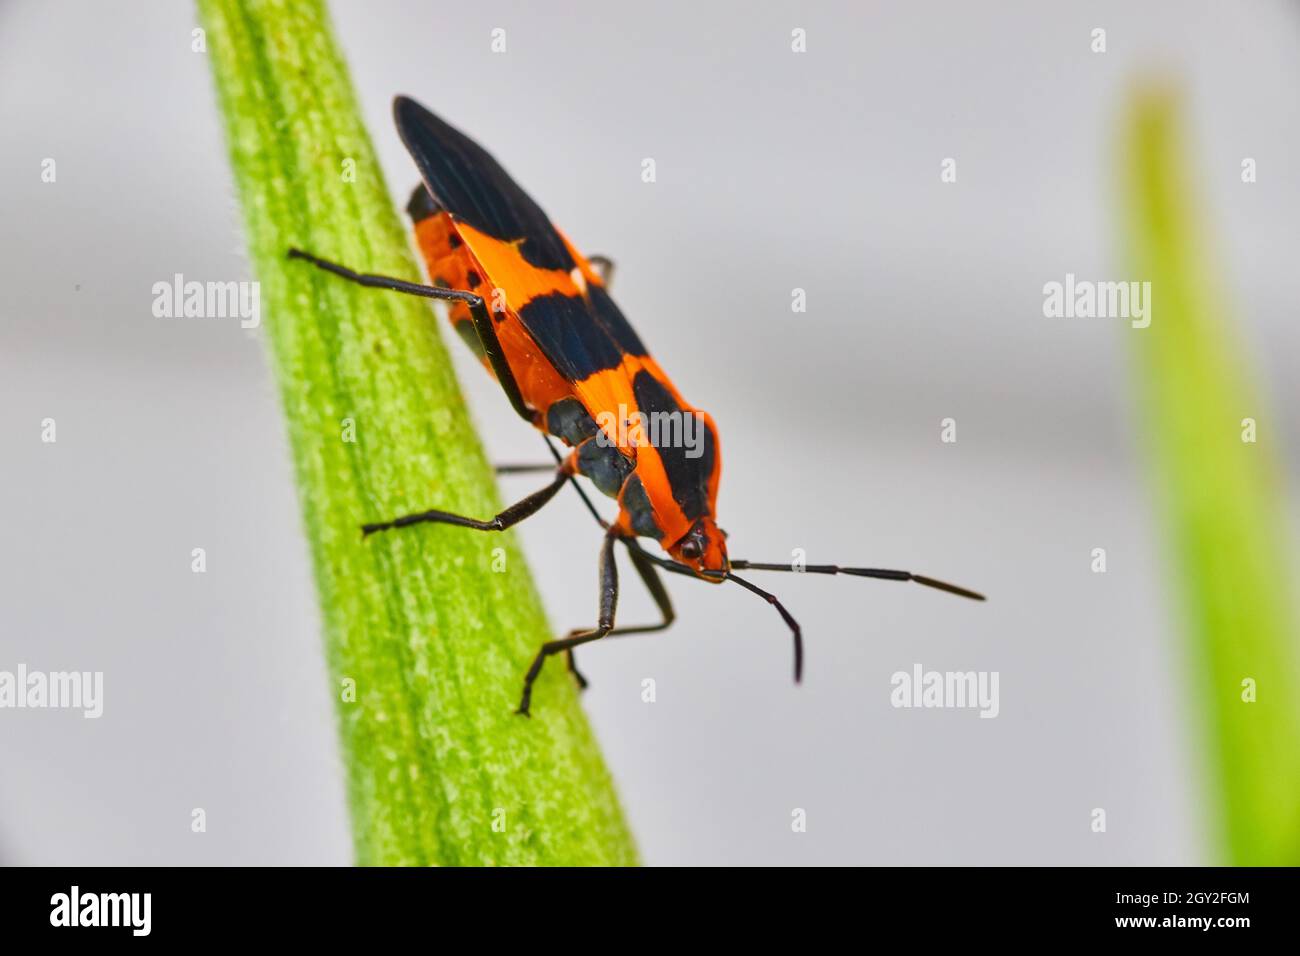 Milkweed seed bug orange and black spots on green leaf Stock Photo